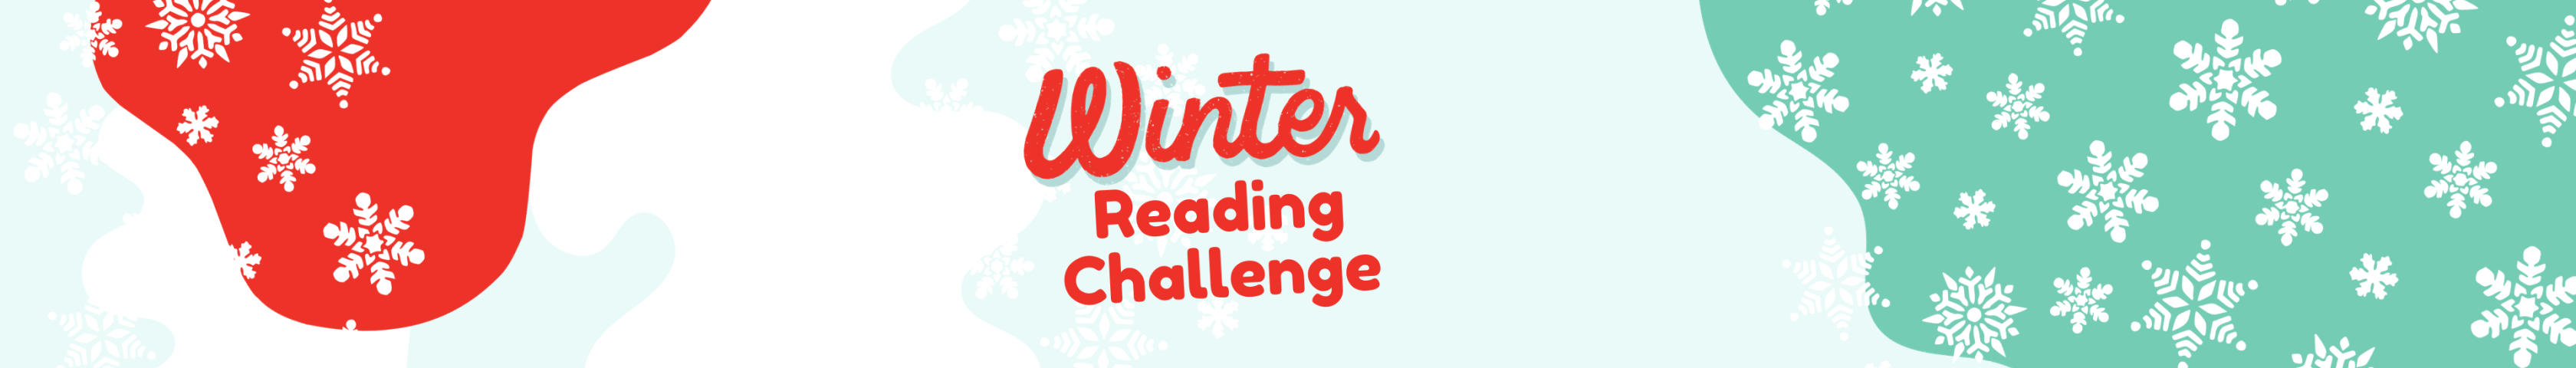 winter reading banner v.2